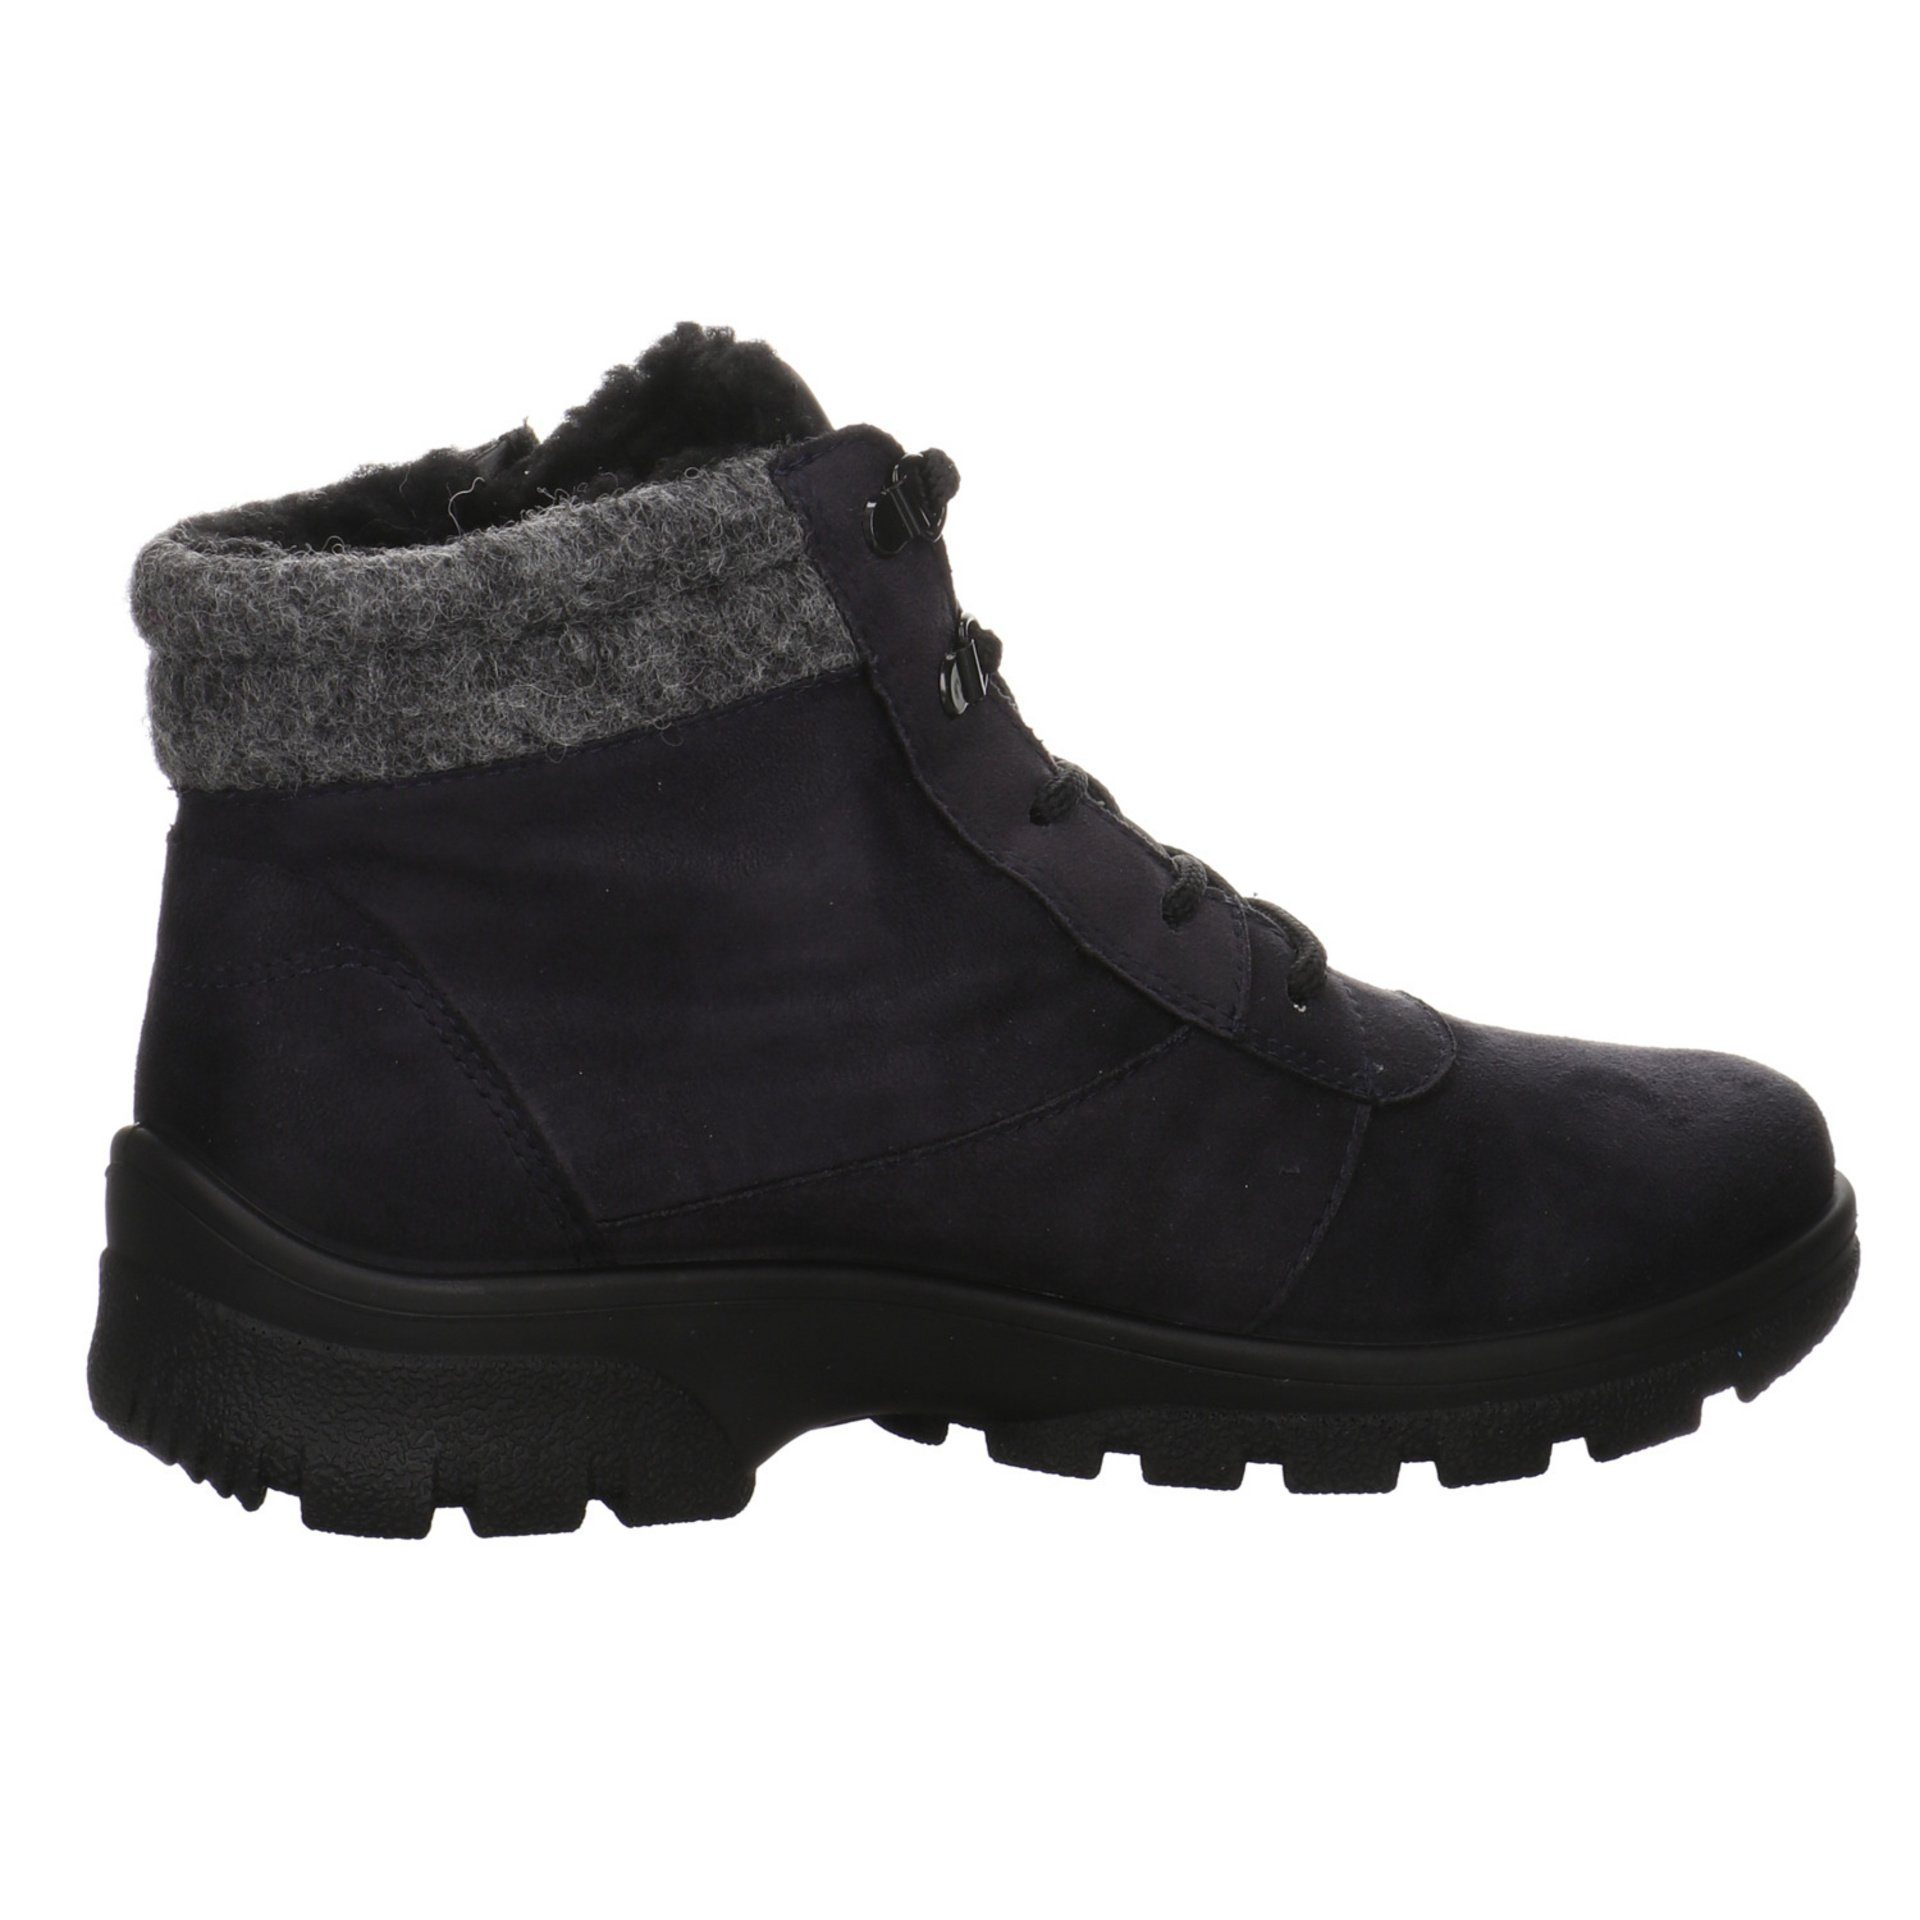 Snowboots Boots Schuhe Saas-Fee Ara Snowboots Damen blau/grau/schwarz Leder-/Textilkombination